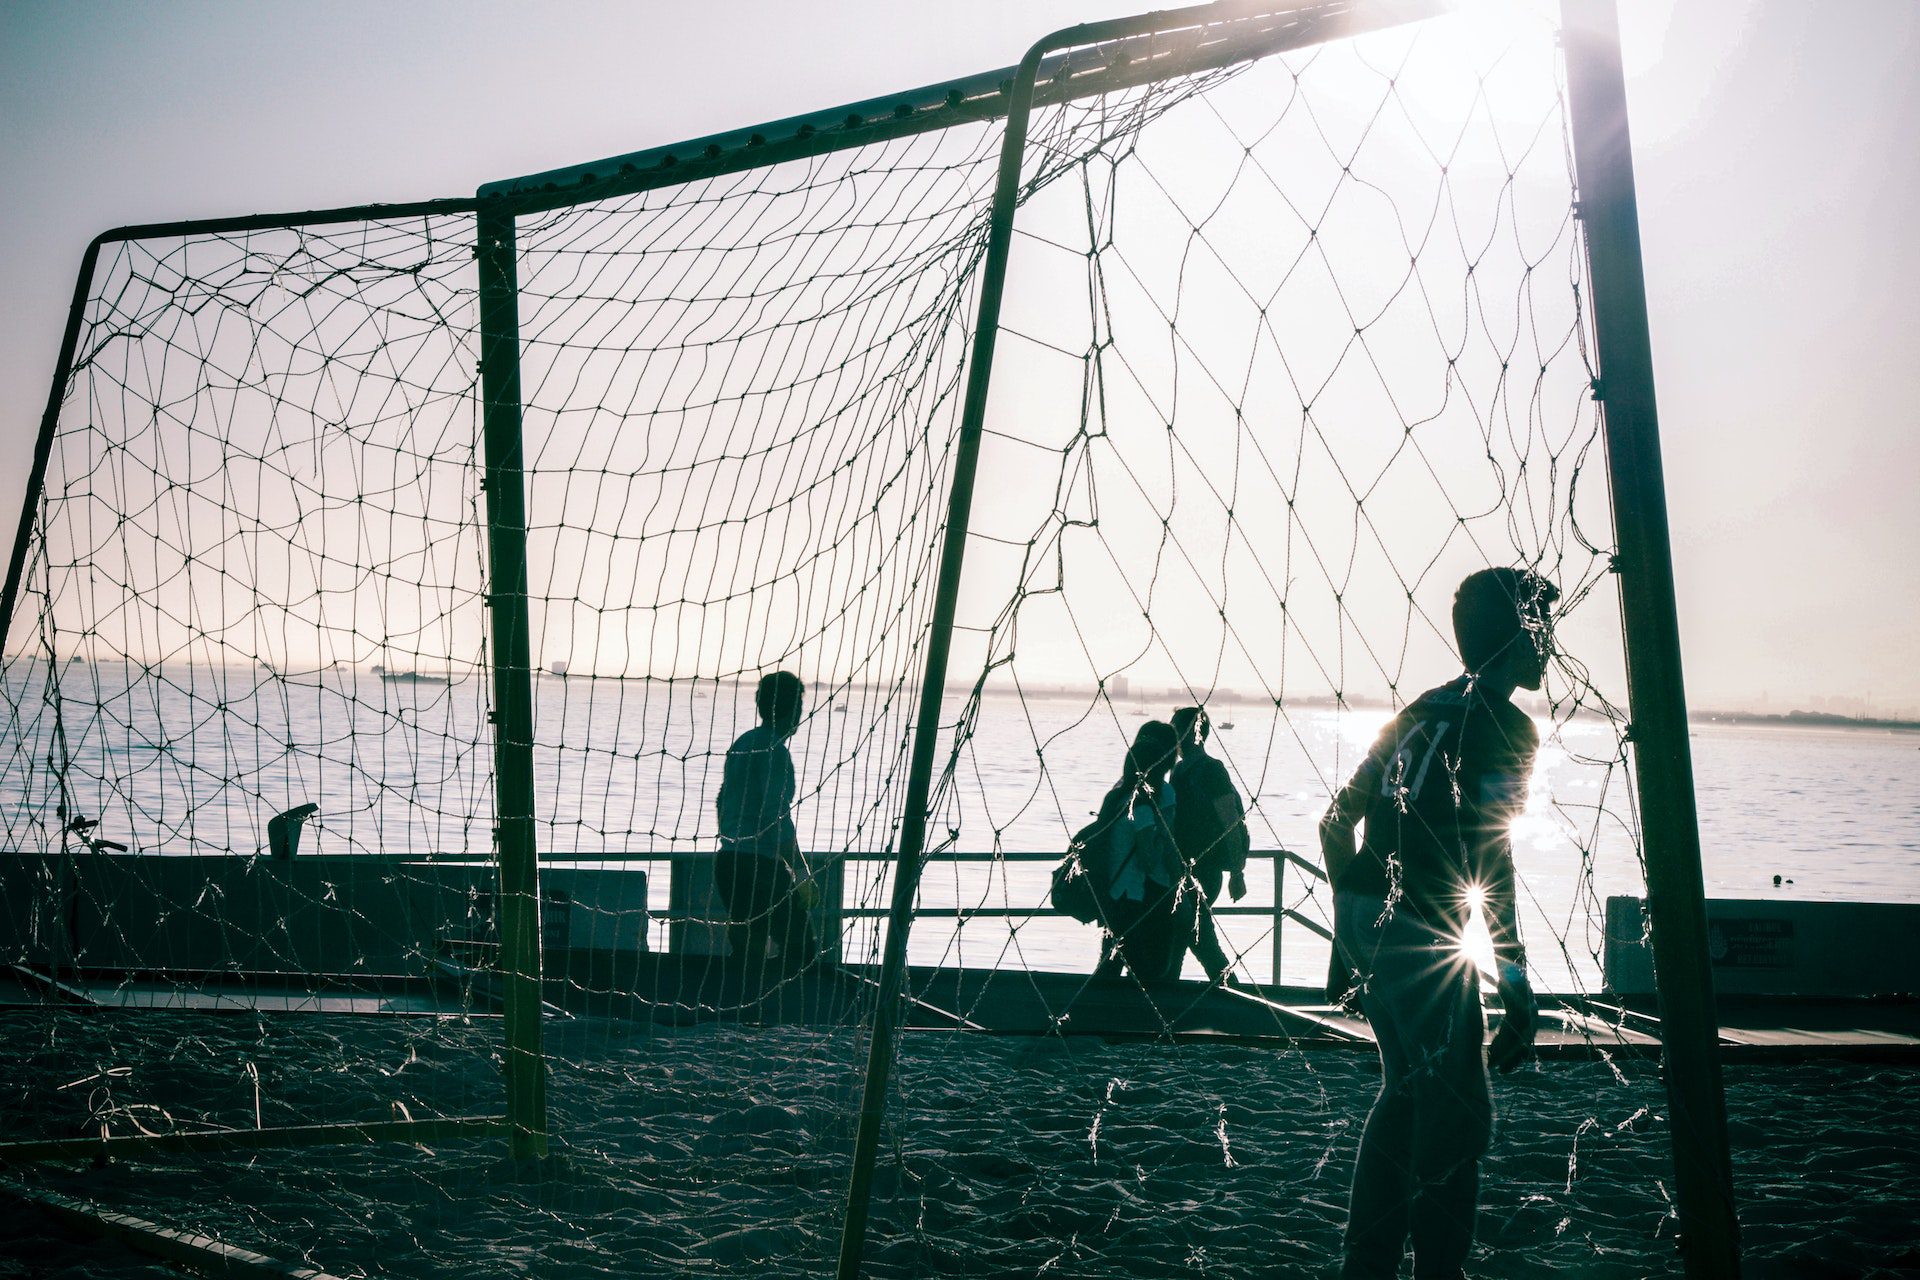 Voetbal op strand. Foto van Serkan Göktay via Pexels